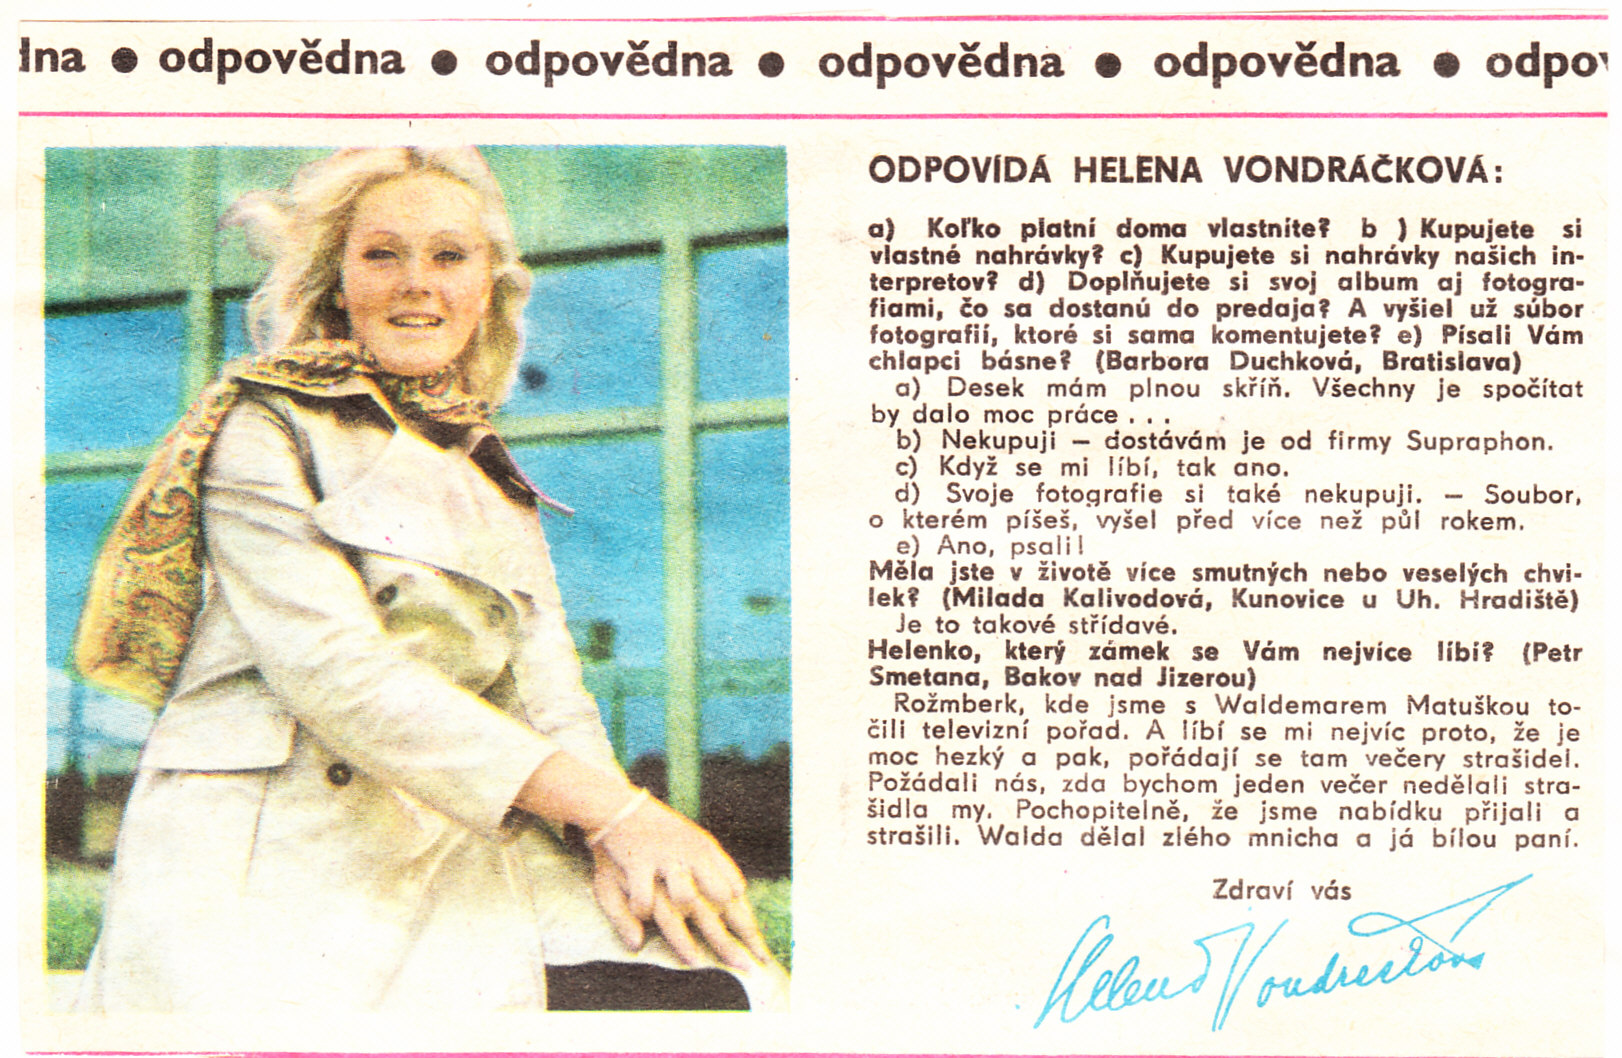 1970, Sedmička-odpovědna a.jpg